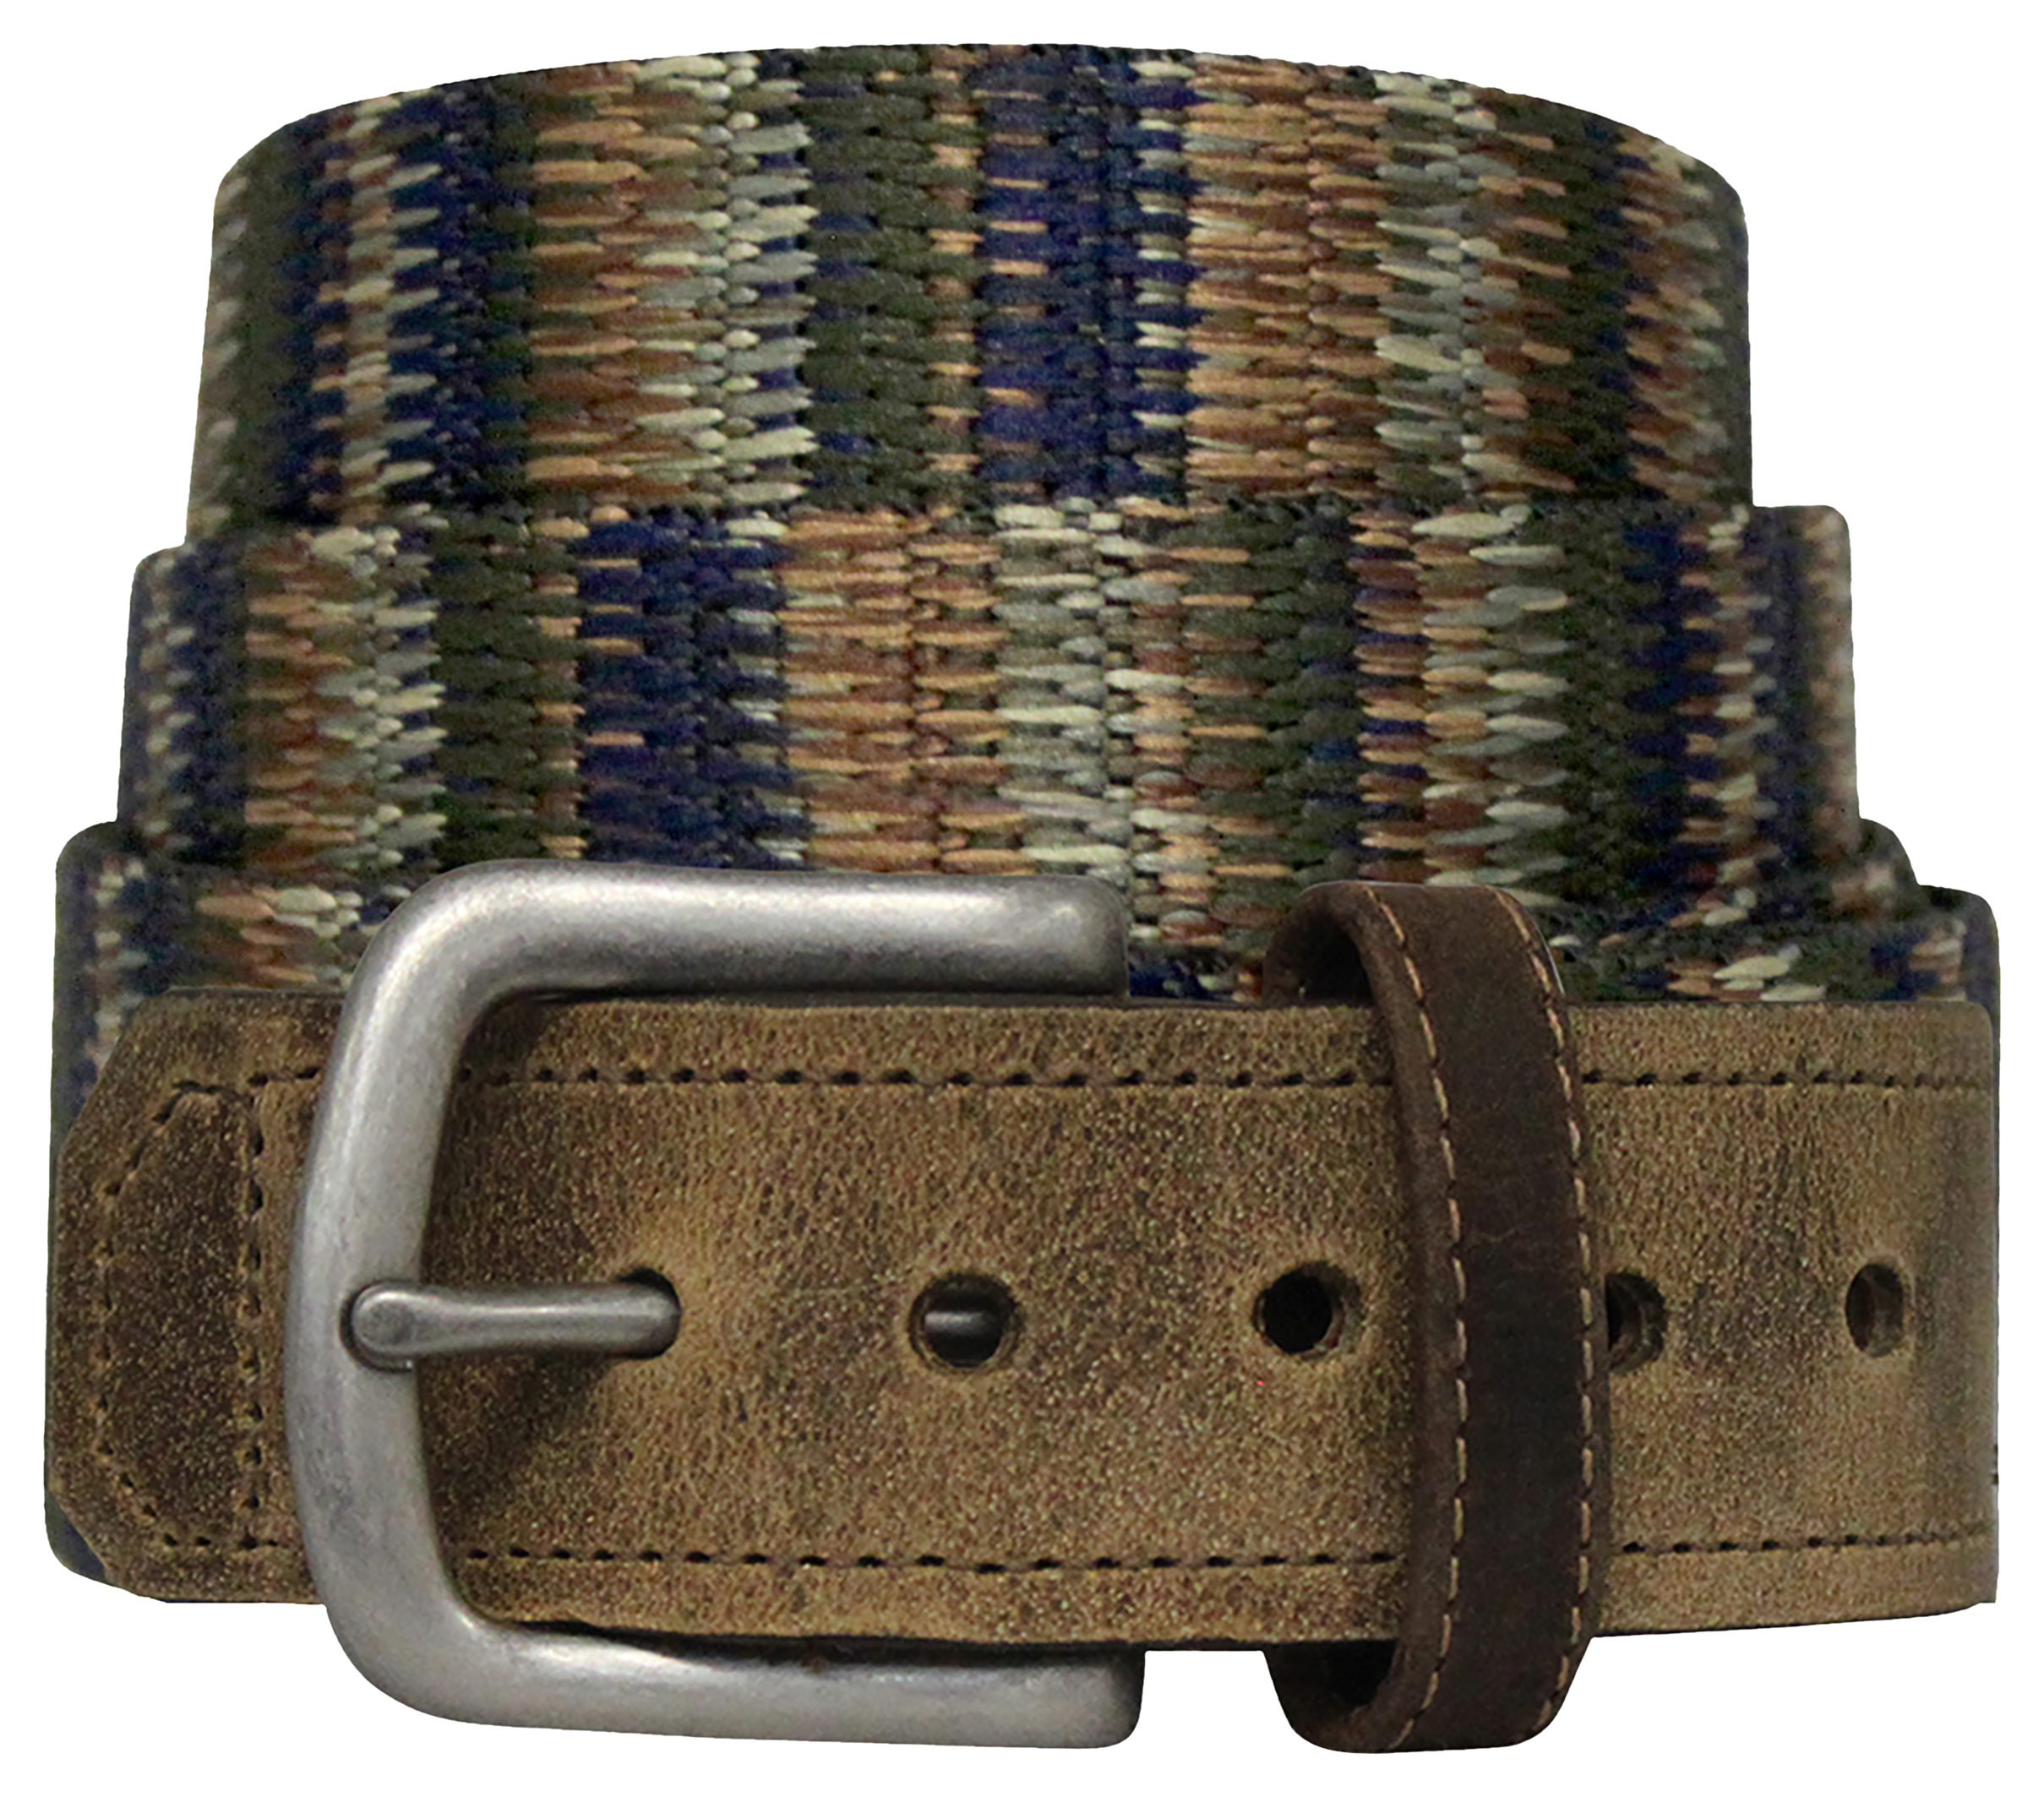 Bison Designs Pontoon Leather Tip Belt for Men - Coyote - 34